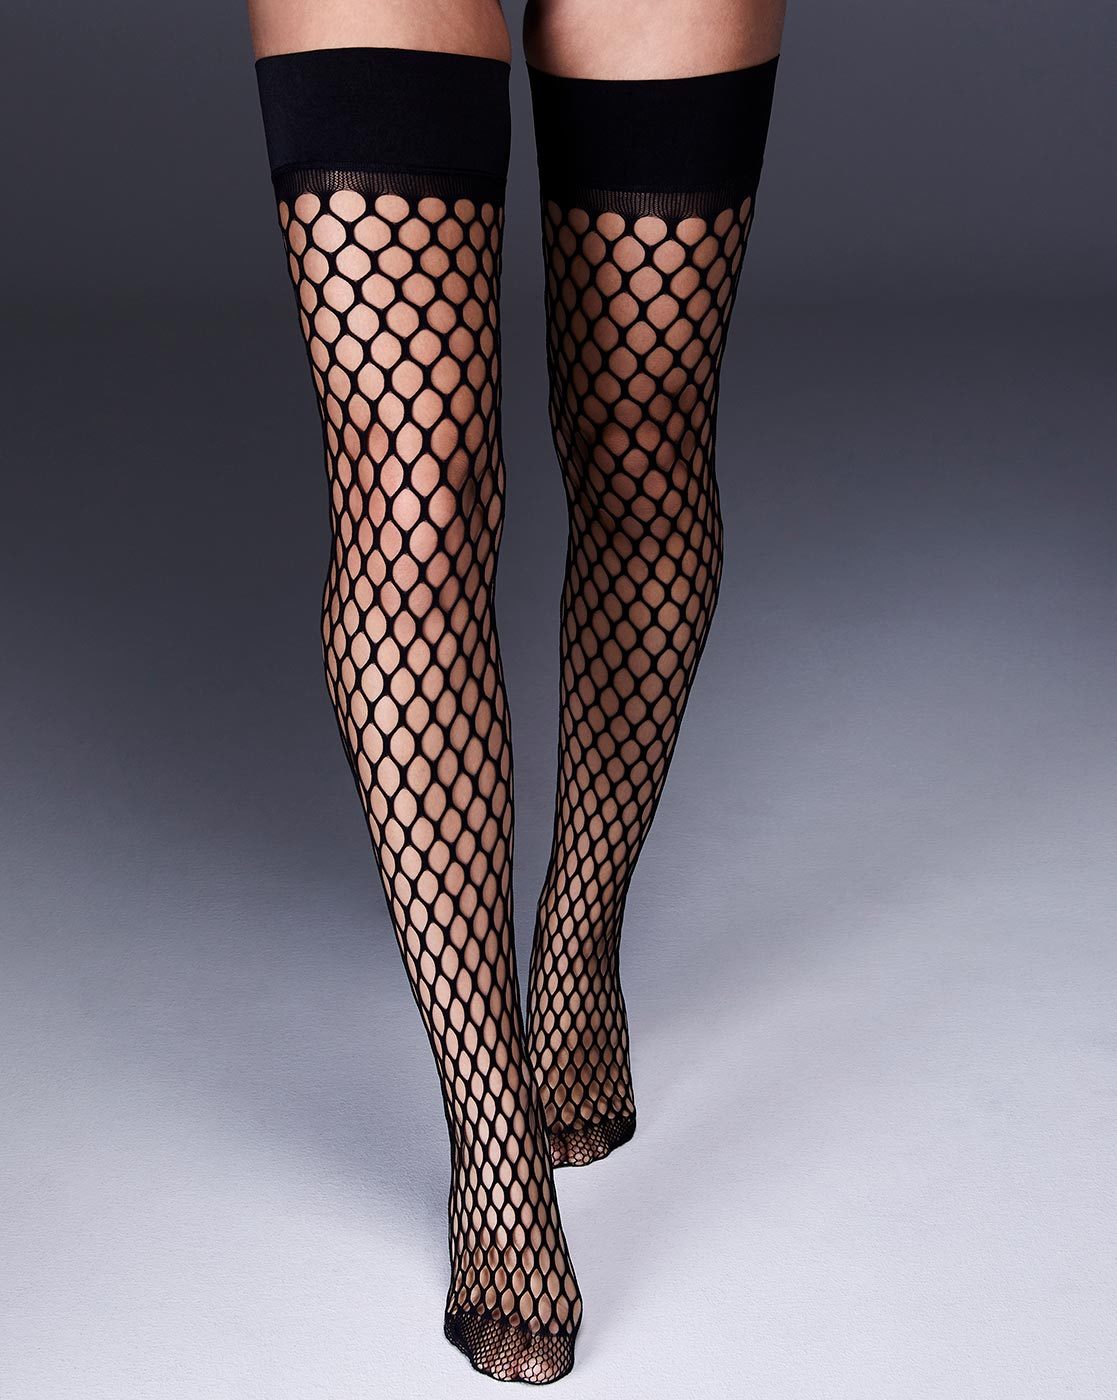 black net stockings